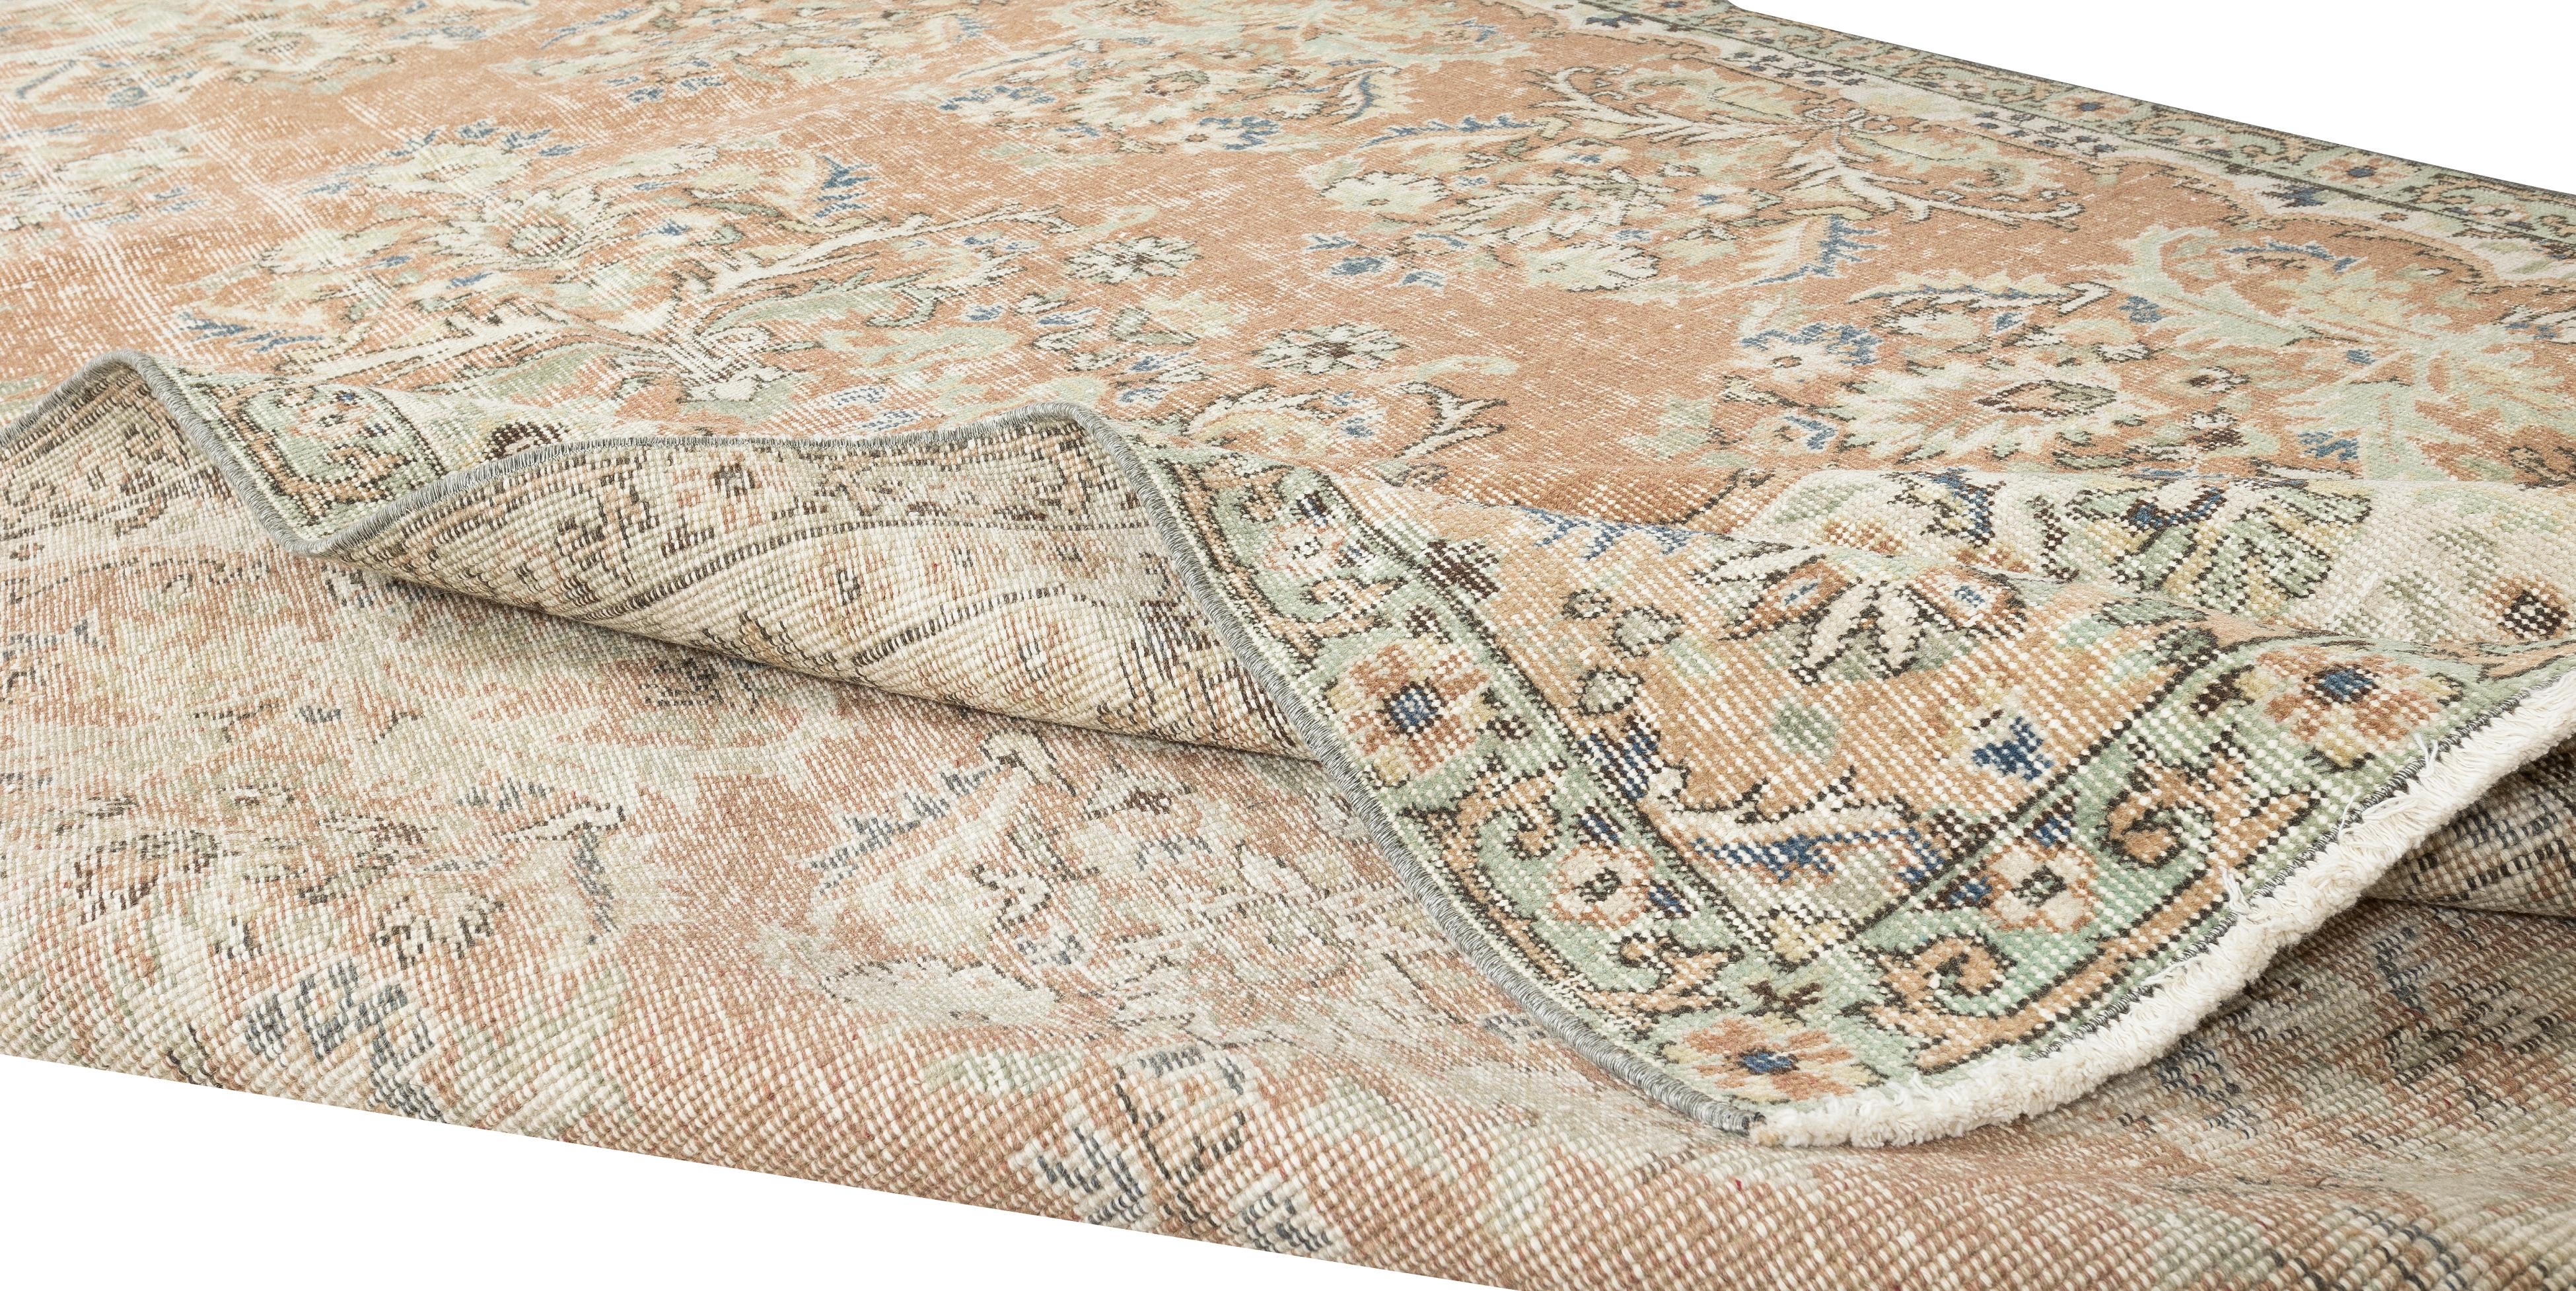 Nos tapis délavés par le soleil sont tous des pièces uniques, nouées à la main, datant de 50 à 70 ans. Chacun d'entre eux présente une esthétique artisanale unique, issue des traditions séculaires de tissage de tapis turcs. Ces tapis sont